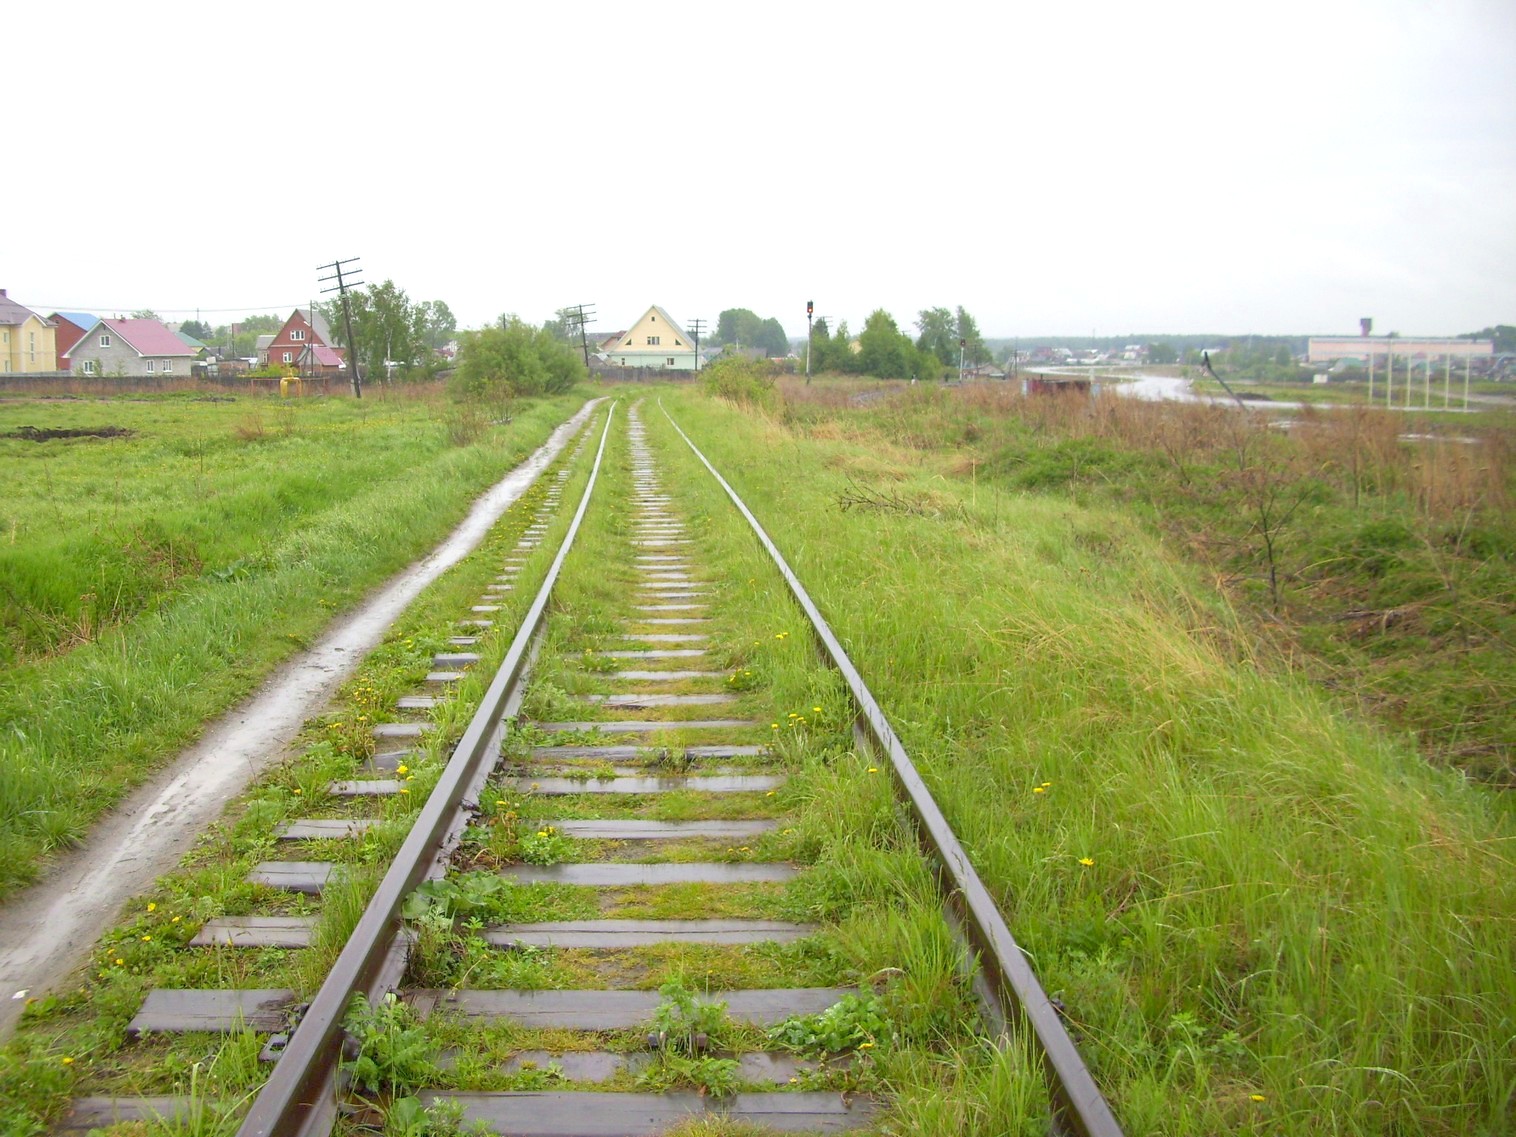 Железнодорожная линия предприятия железнодорожного транспорта завода «Уралмаш»  —  фотографии, сделанные в 2010 году (часть 11)